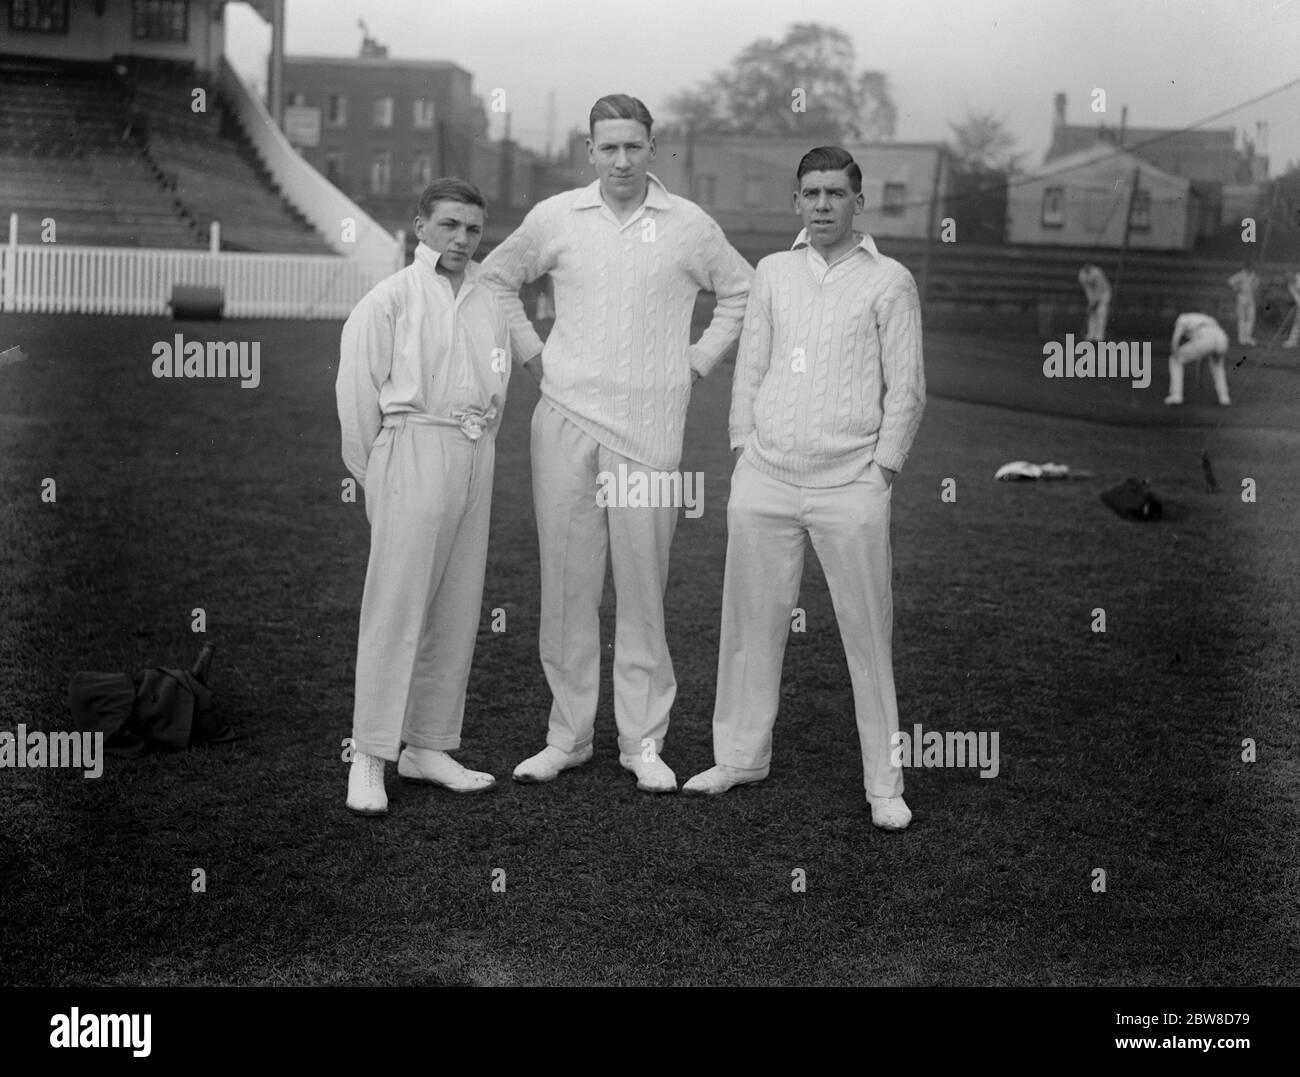 Le nouveau trio de bowling de Surrey . La recherche de nouveaux bowlers de Surrey commence à produire des résultats . de gauche à droite Hart , Alfred Richard (Alf) Gover , et Sheffield . 20 avril 1928 Banque D'Images